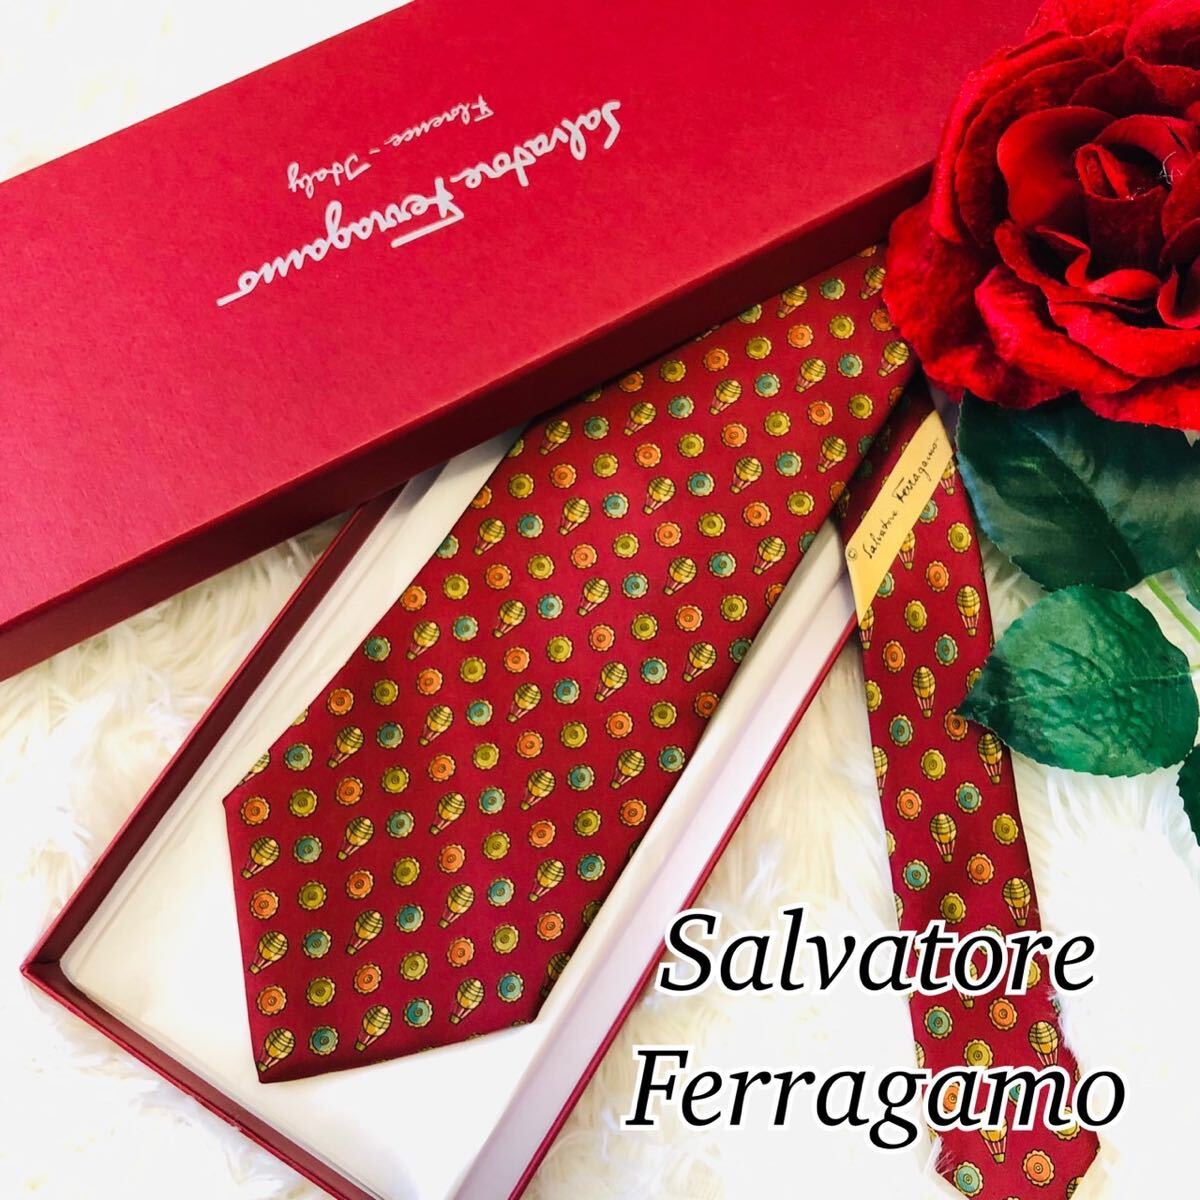 Salvatore Ferragamo サルヴァトーレフェラガモ メンズ 男性 紳士 ネクタイ 総柄 茶 ブラウン 結婚式 ビジネス 美品 剣先 9.7cmの画像1